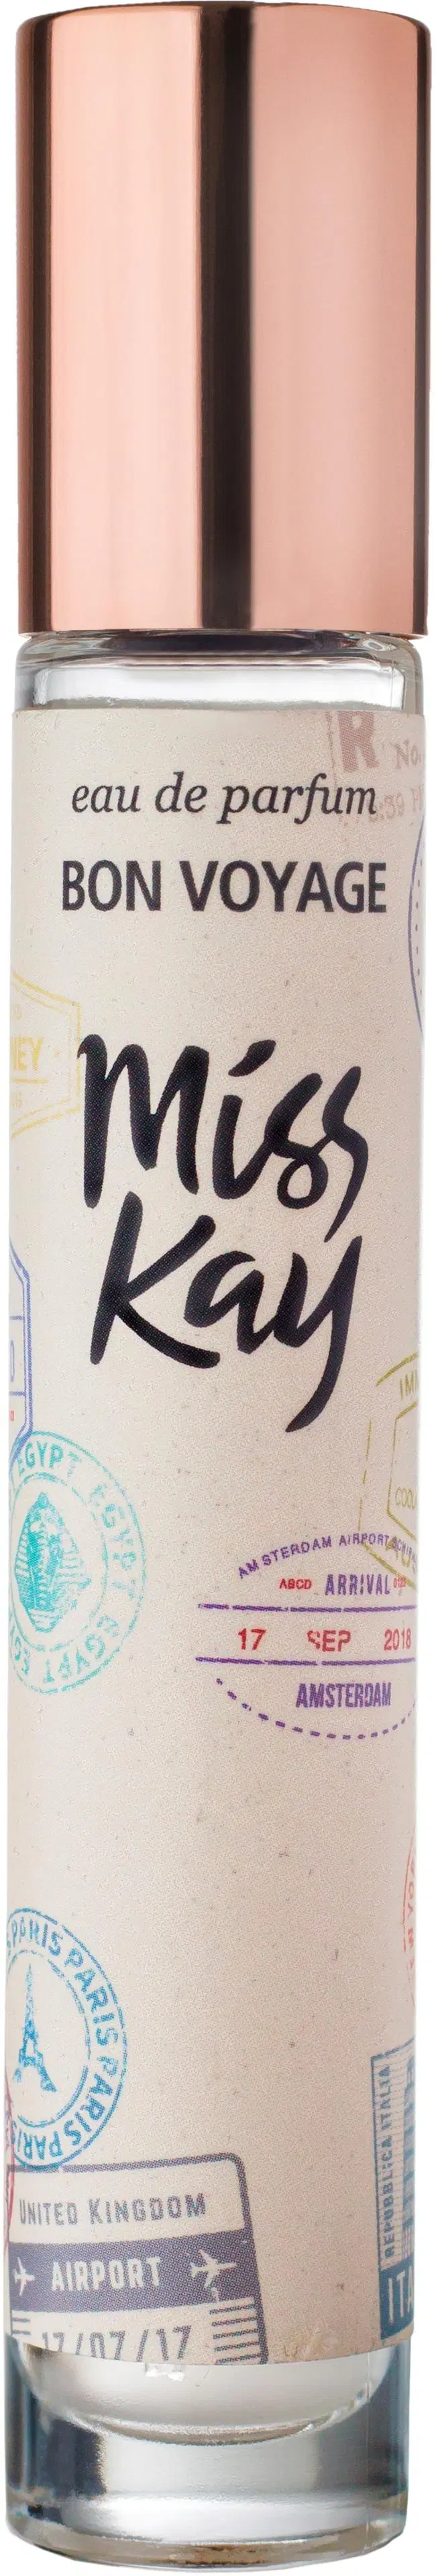 Miss Kay Bon Voyage EdP tuoksu 24,5 ml